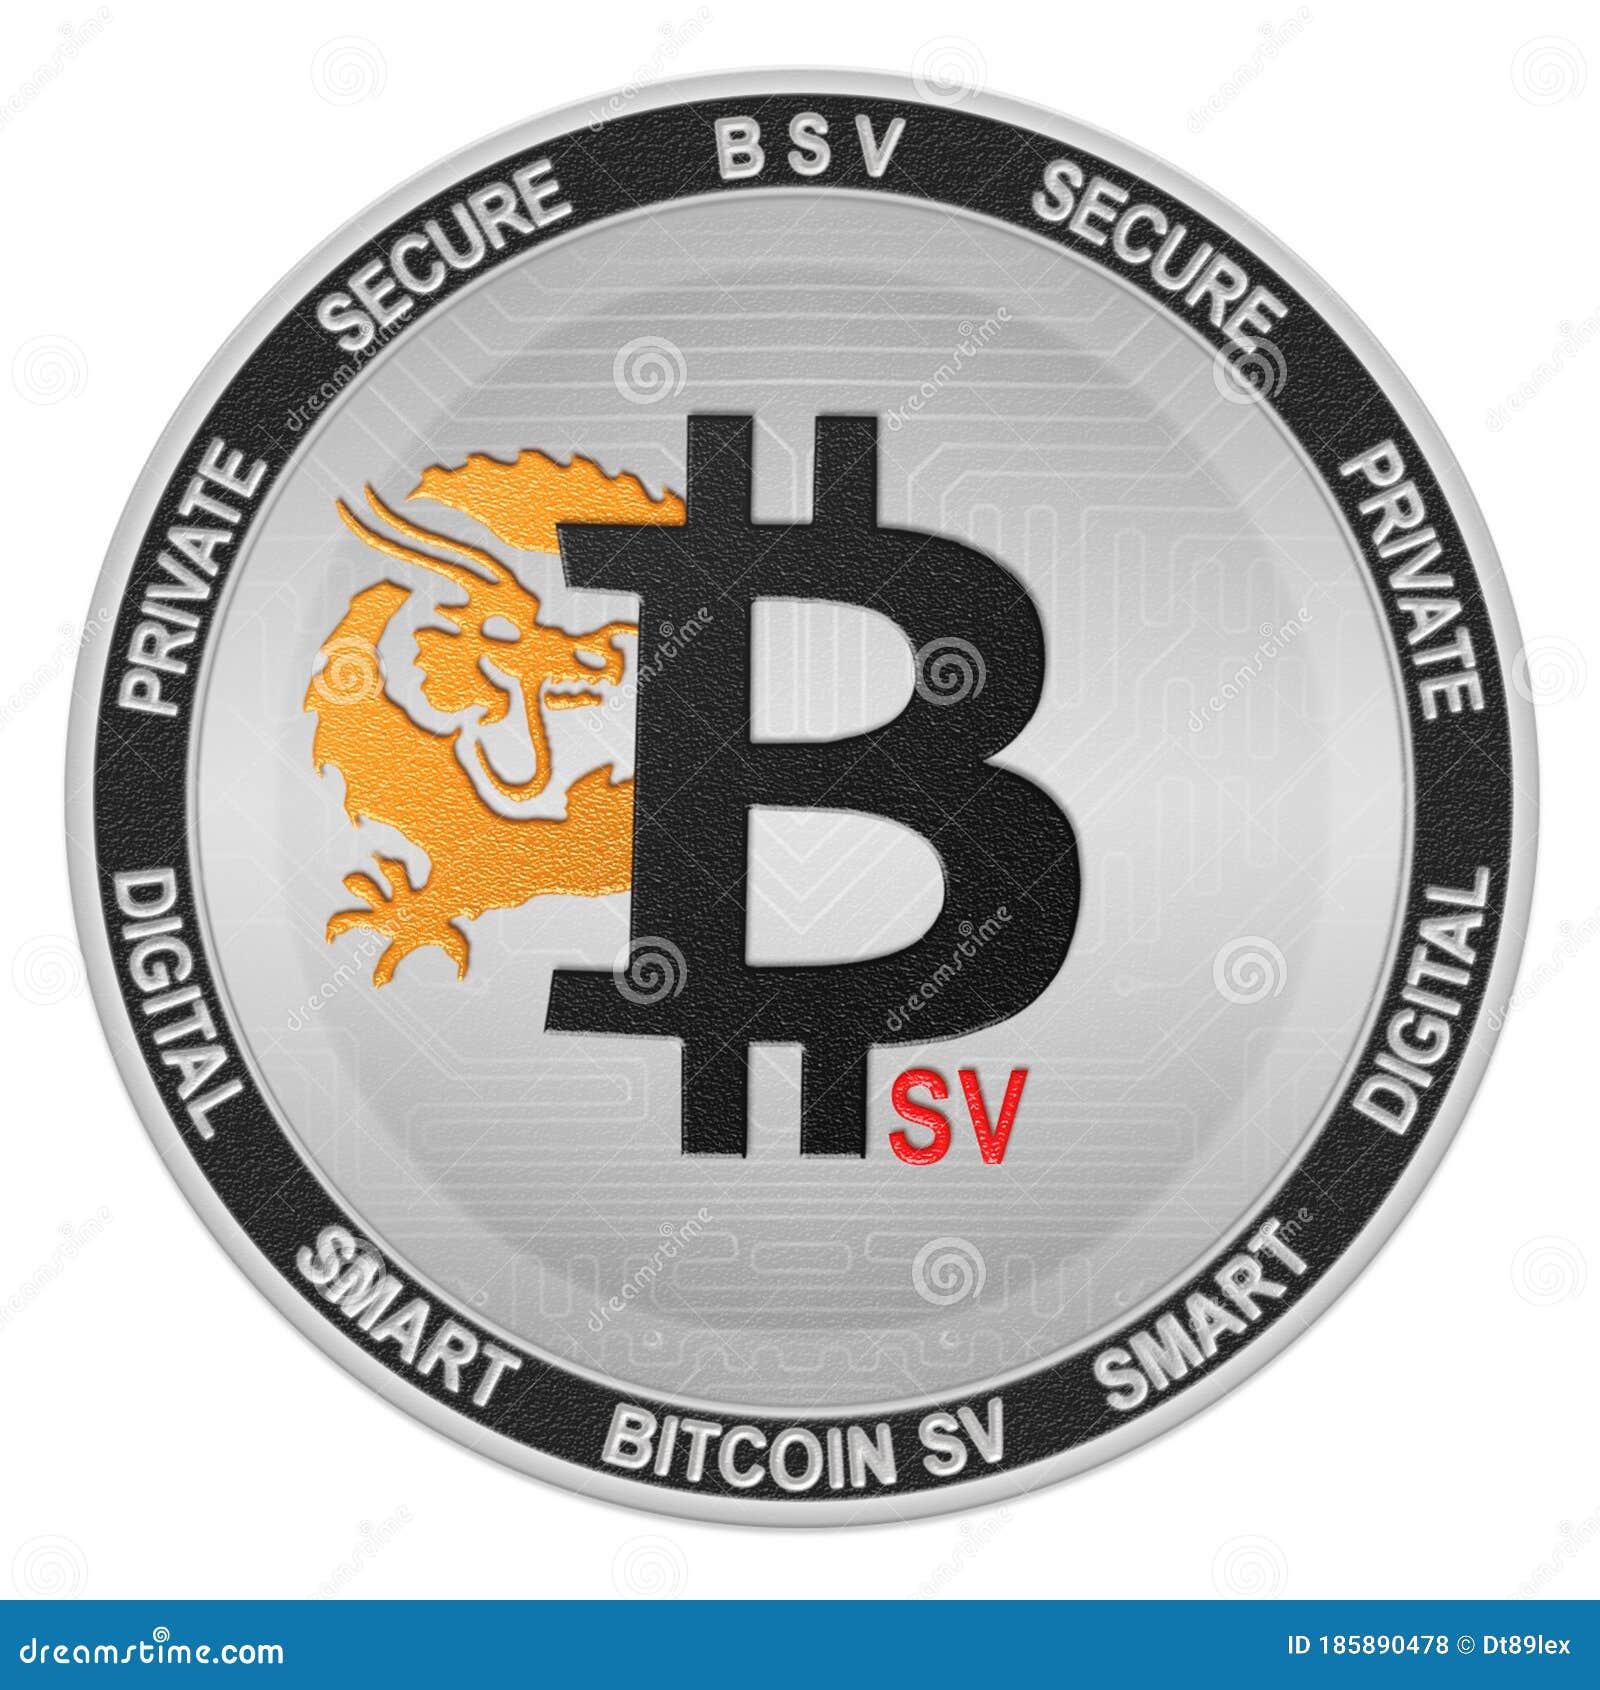 bsv bitcoin)